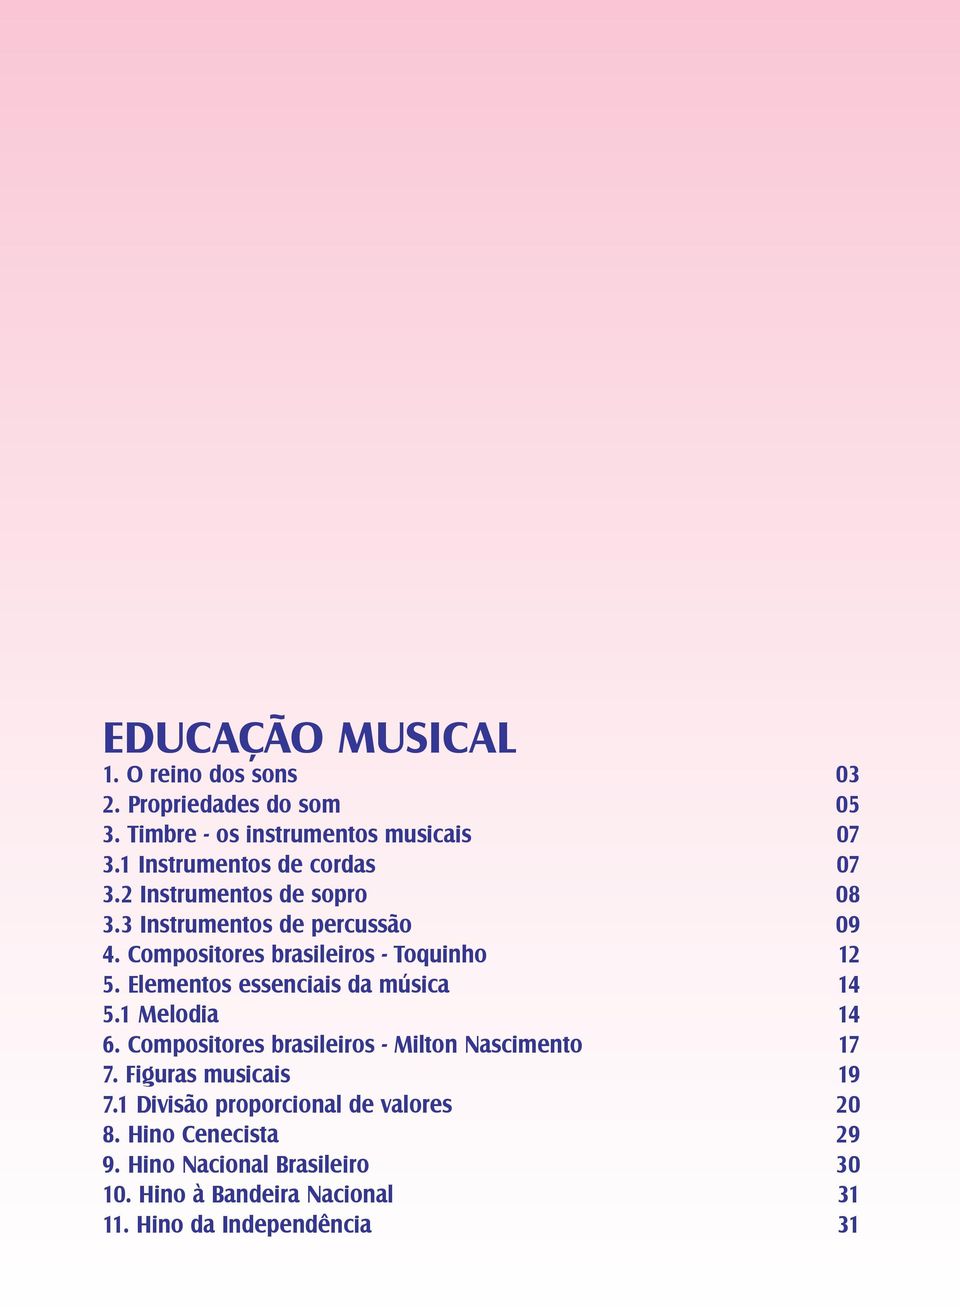 Compositores brasileiros - Toquinho 12 5. Elementos essenciais da música 14 5.1 Melodia 14 6.